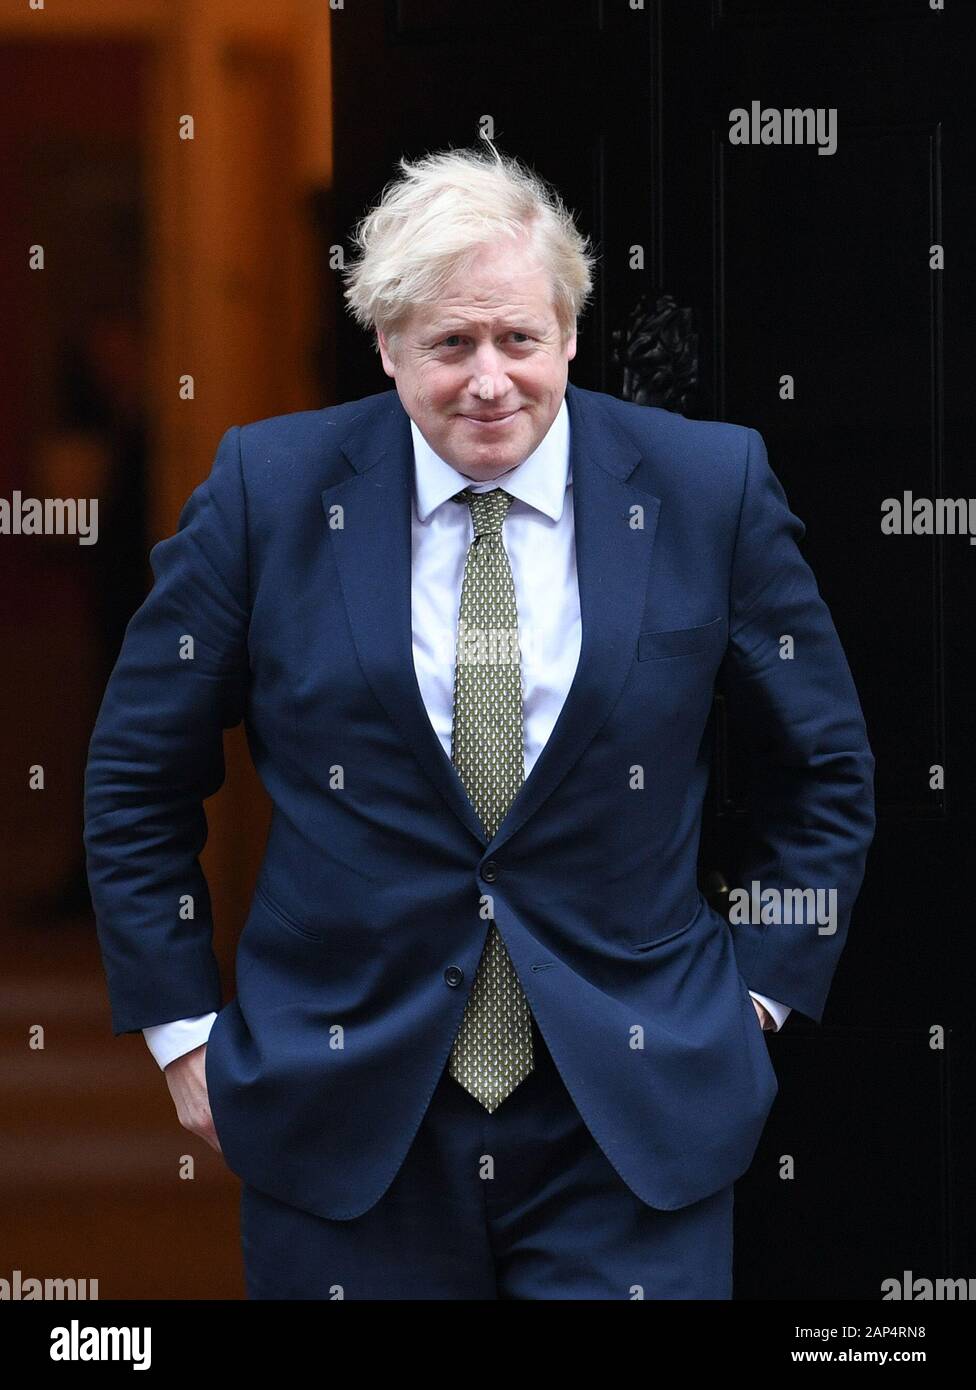 Premierminister Boris Johnson wartet auf die Ankunft des ägyptischen Präsidenten Abdel Fattah el-Sisi zu 10 Downing Street, London, für die bilaterale Treffen. Stockfoto